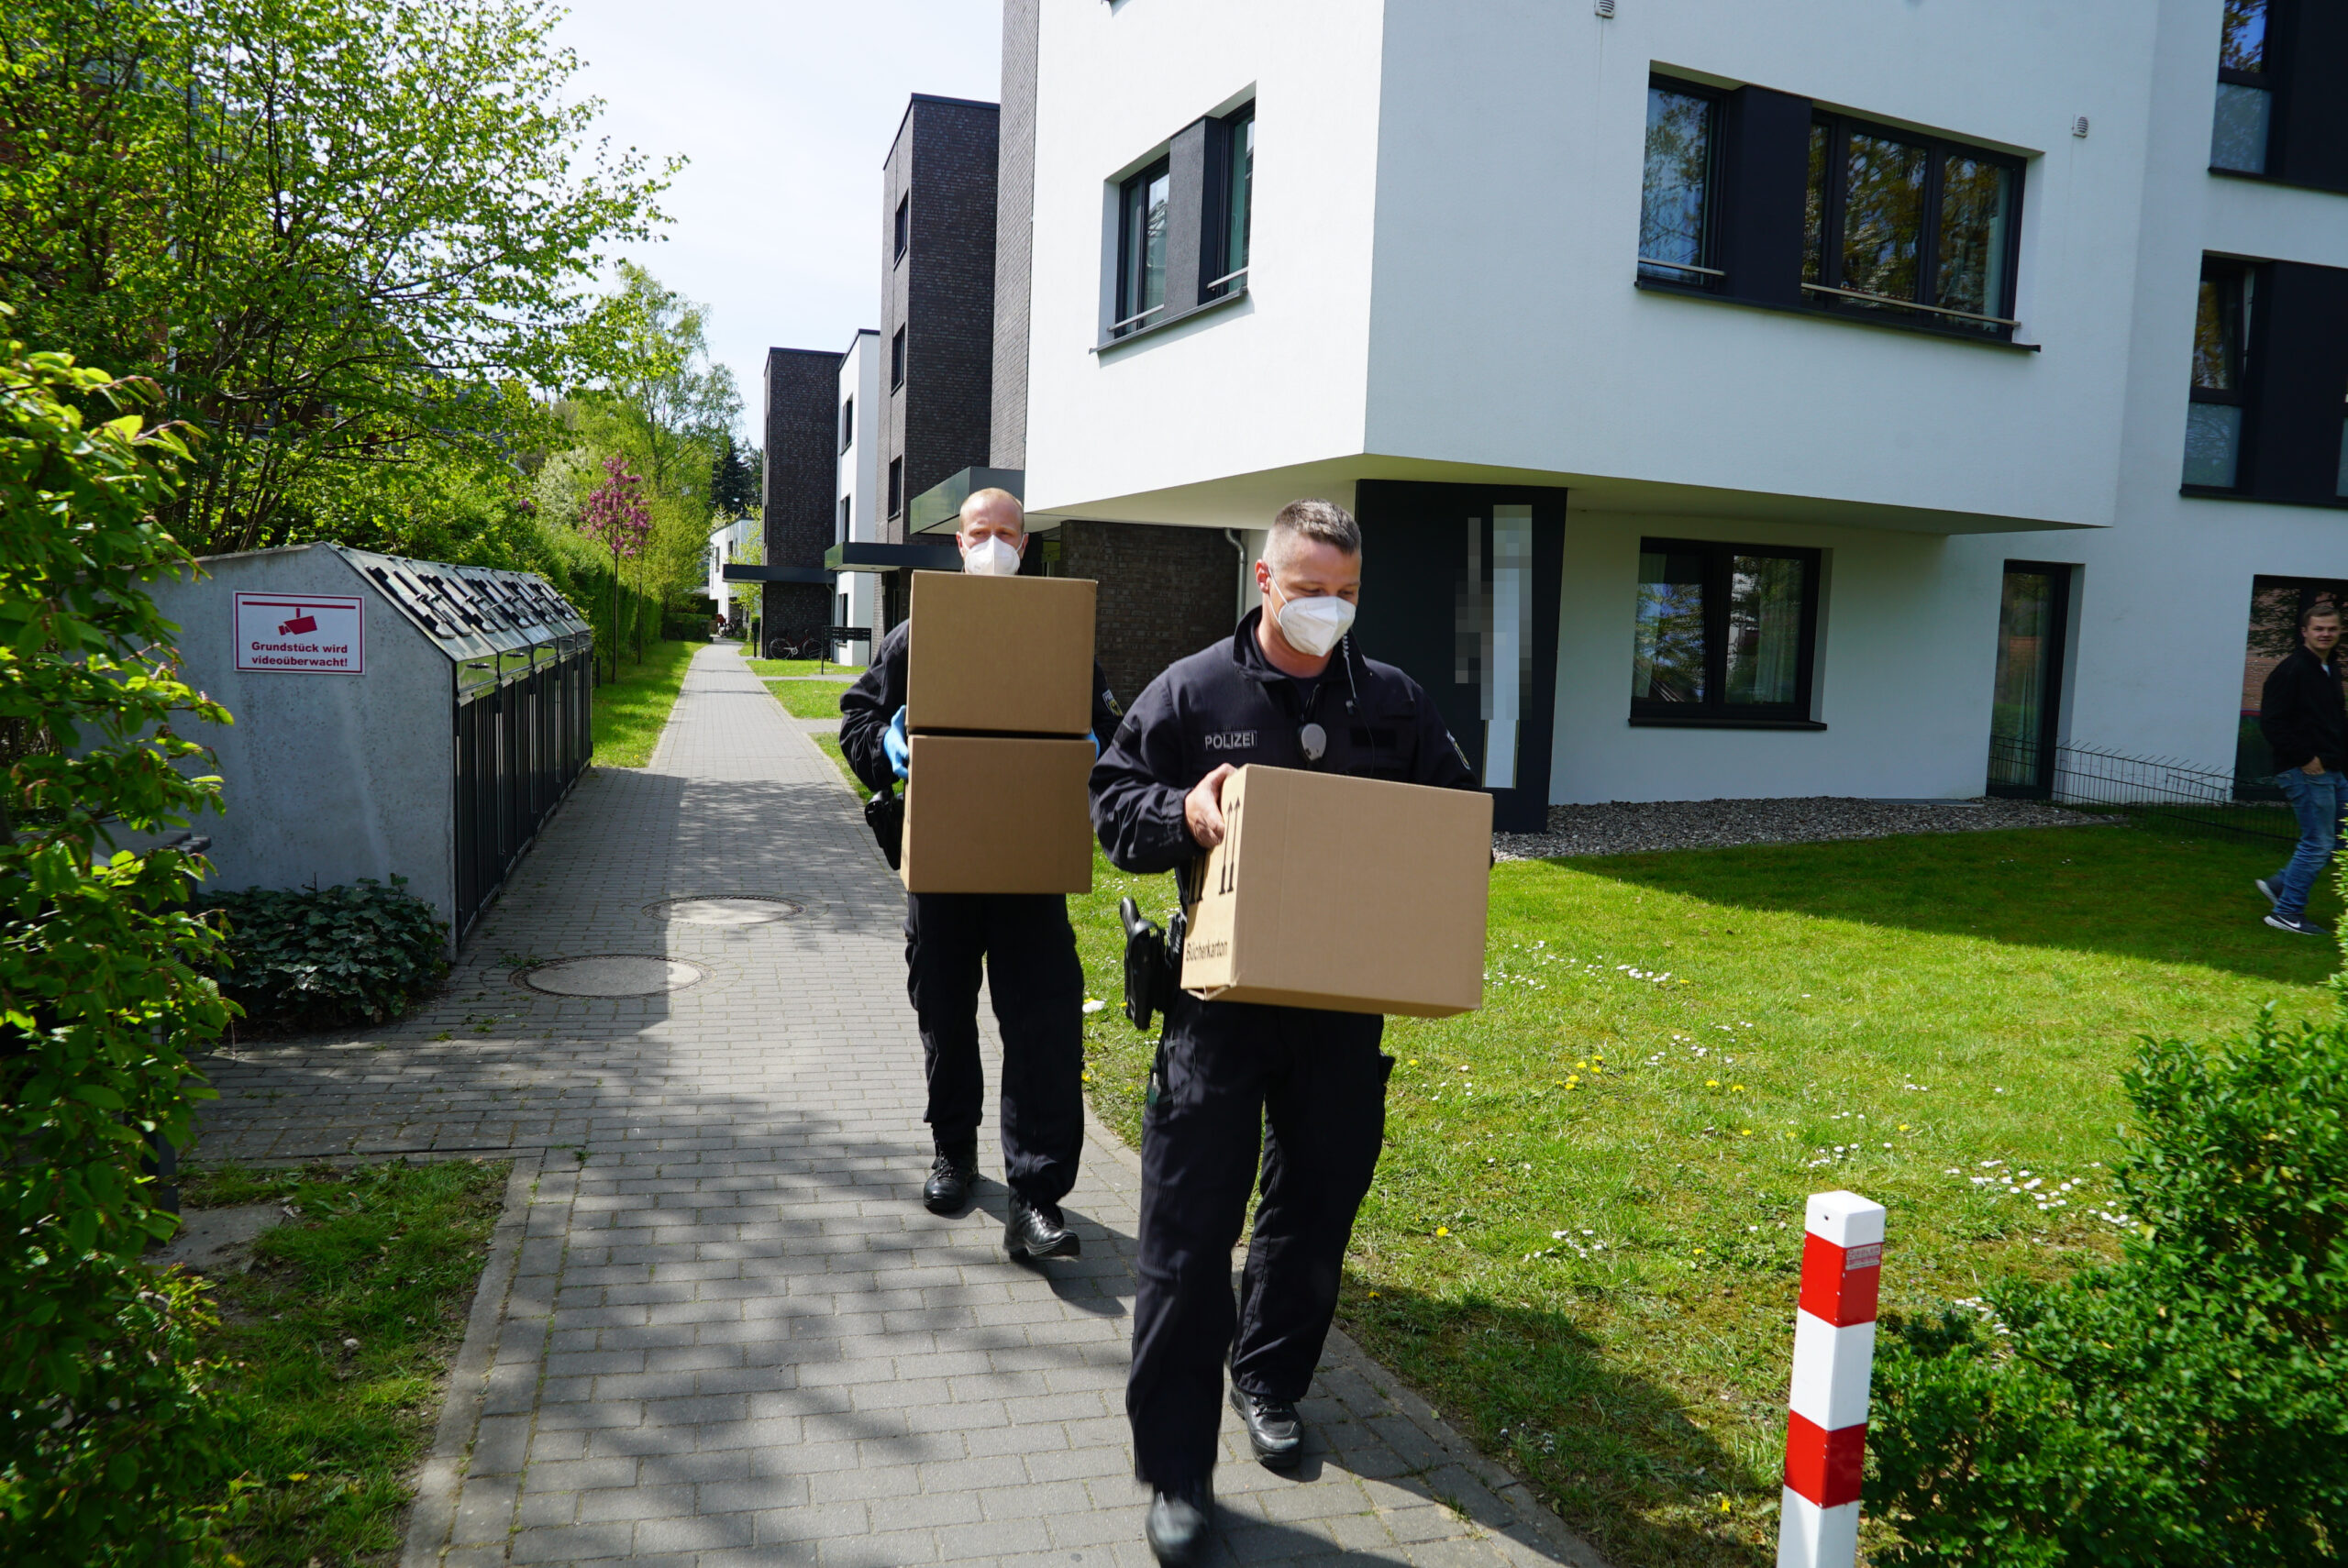 Bundespolizisten schleppen Kisten mit mutmaßlichen Beweismitteln.